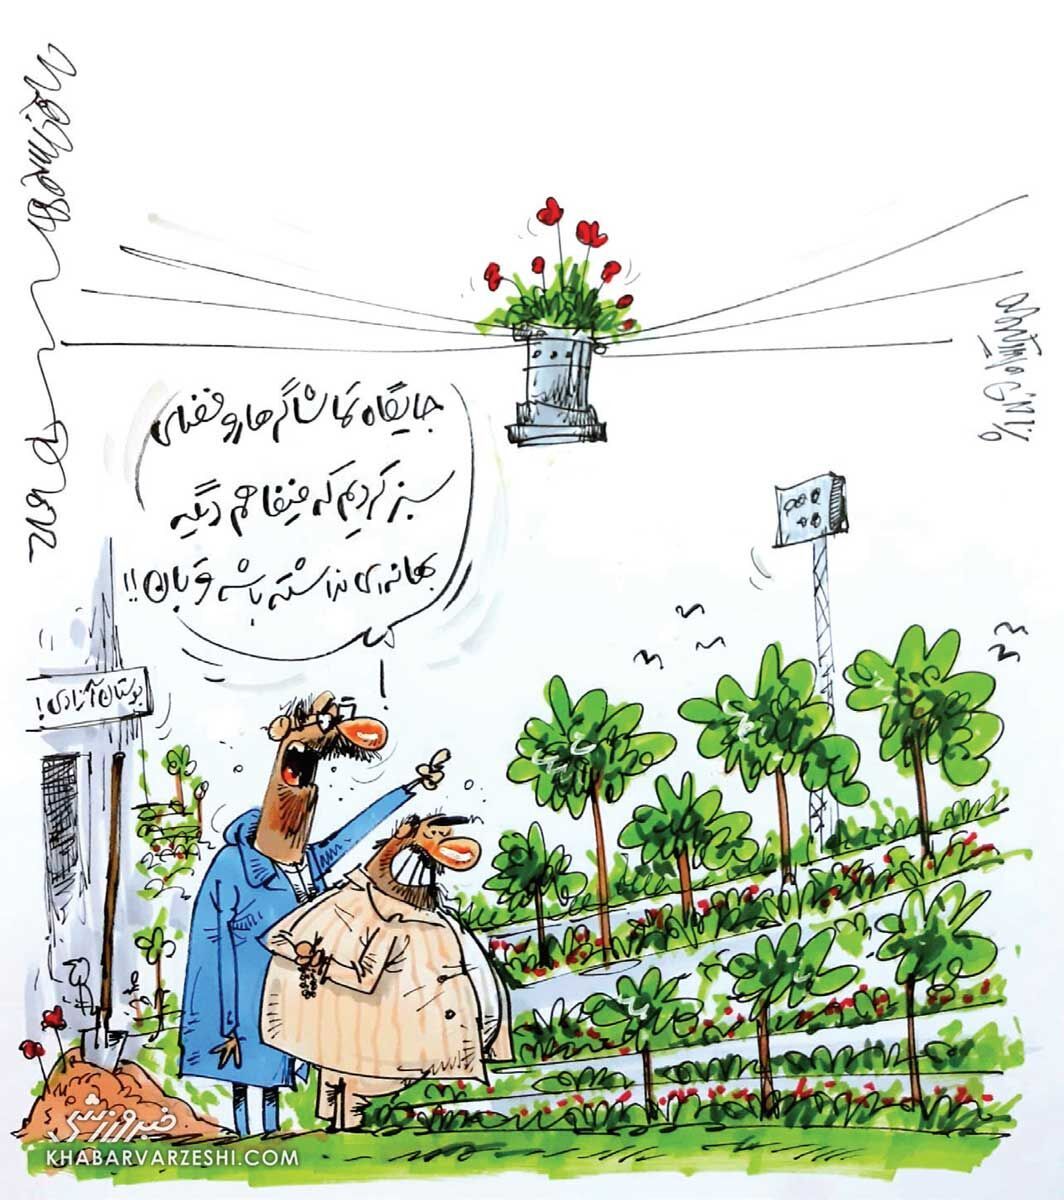 کاریکاتور/ وقتشه سکوها رو گل و گیاه بکاریم!